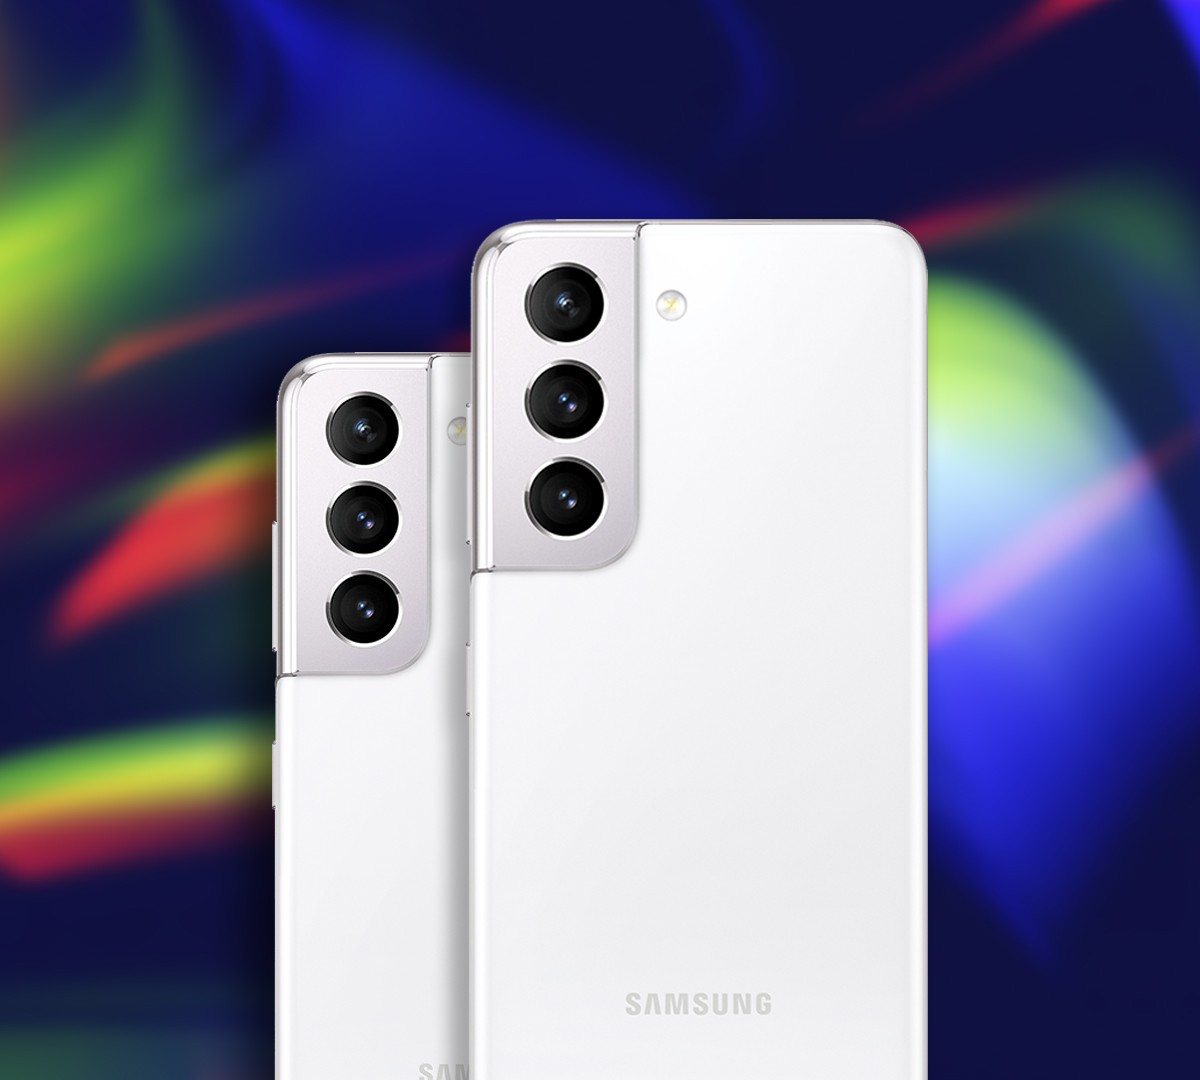 USADO: Smartphone Samsung Galaxy S21 Ultra 256GB 5G Wi-Fi Tela 6.8'' Dual  Chip 12GB RAM Câmera Quádrupla + Selfie 40MP - Preto em Promoção na  Americanas